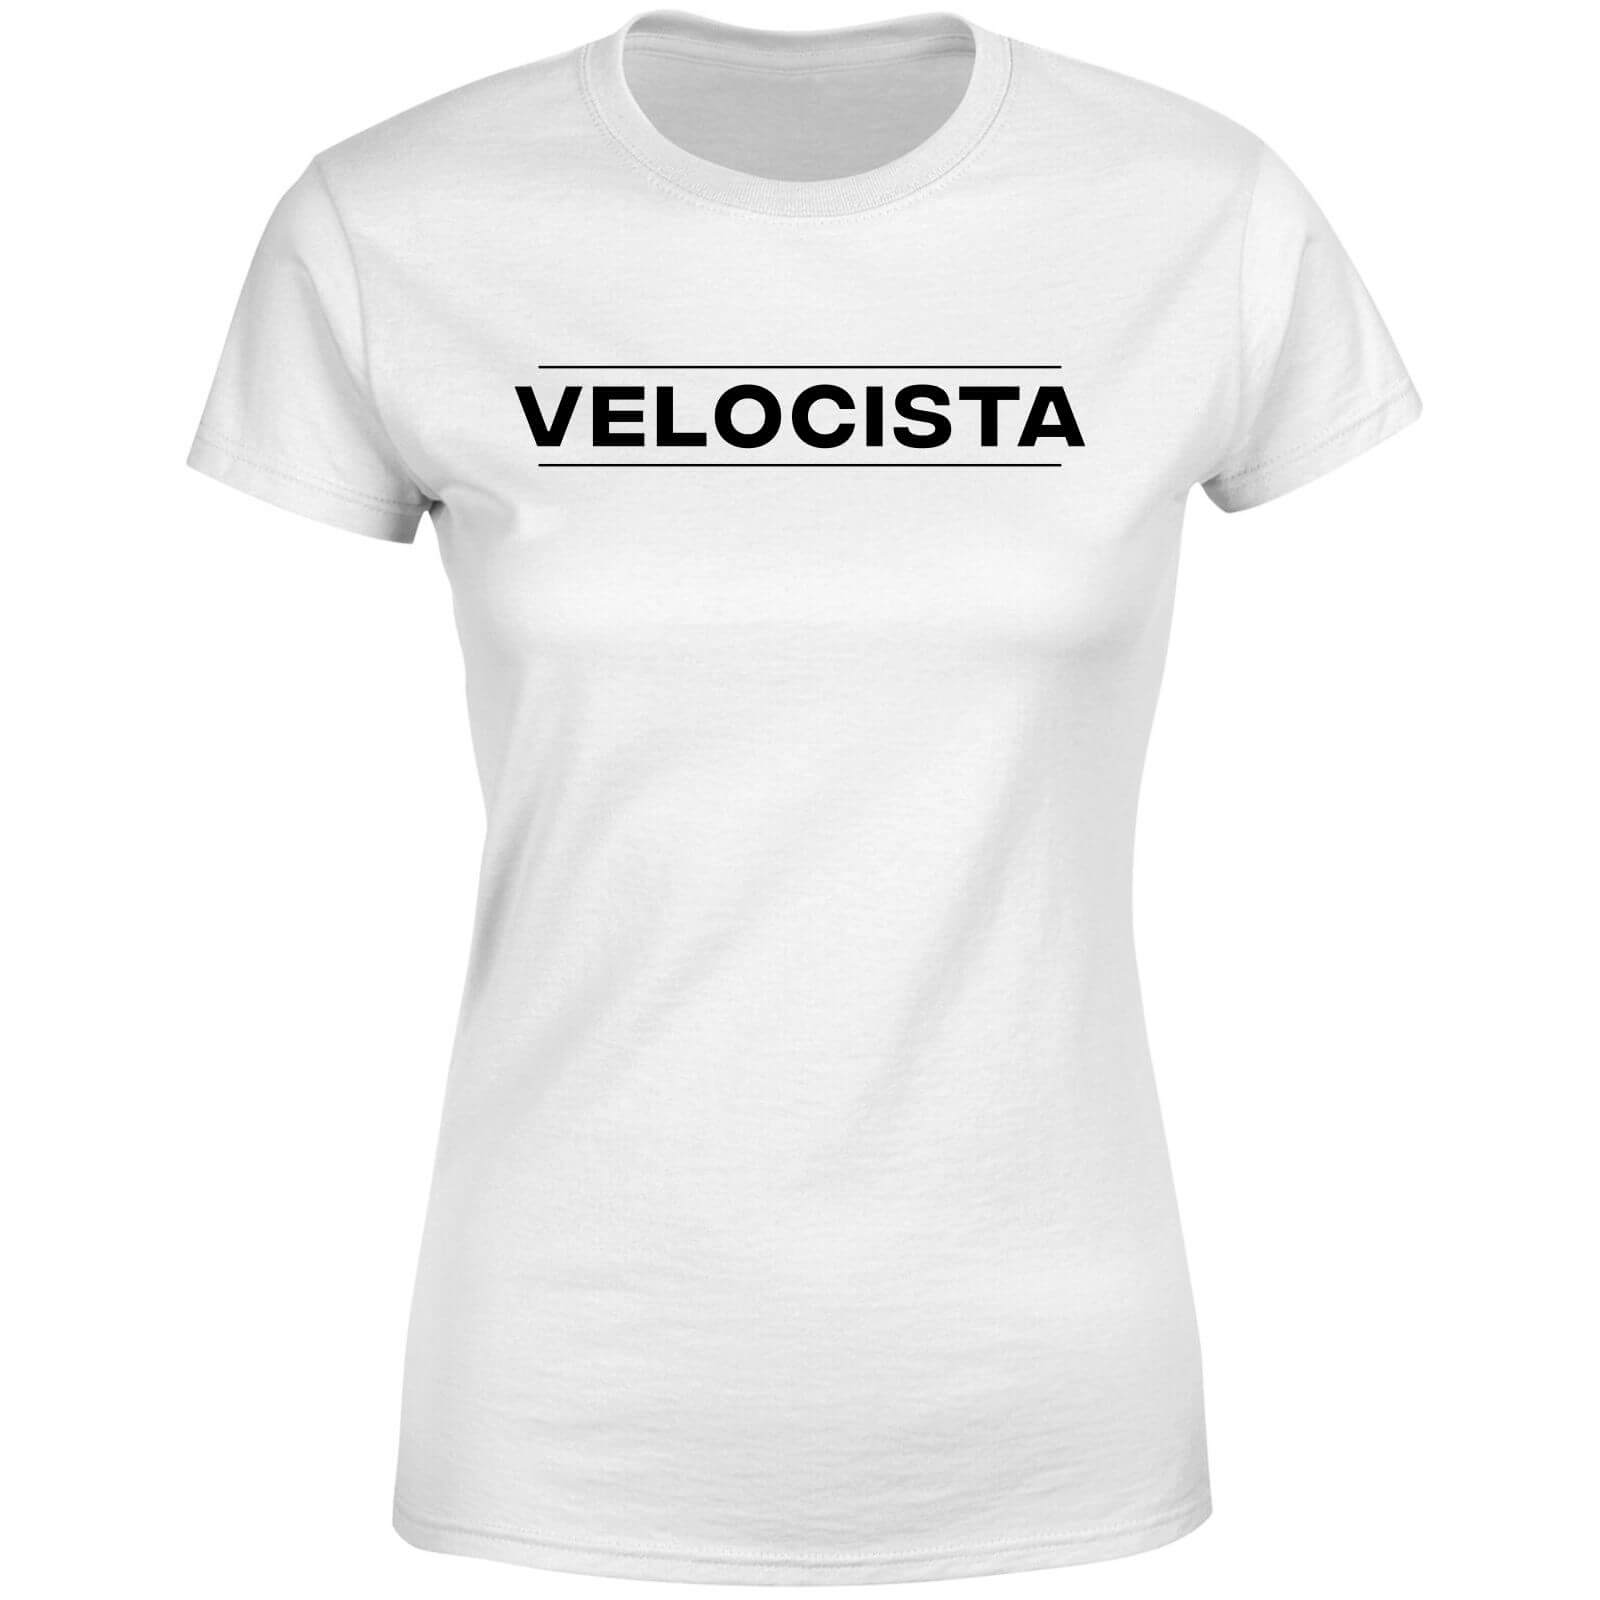 Velocista Women's T-Shirt - White - S - White